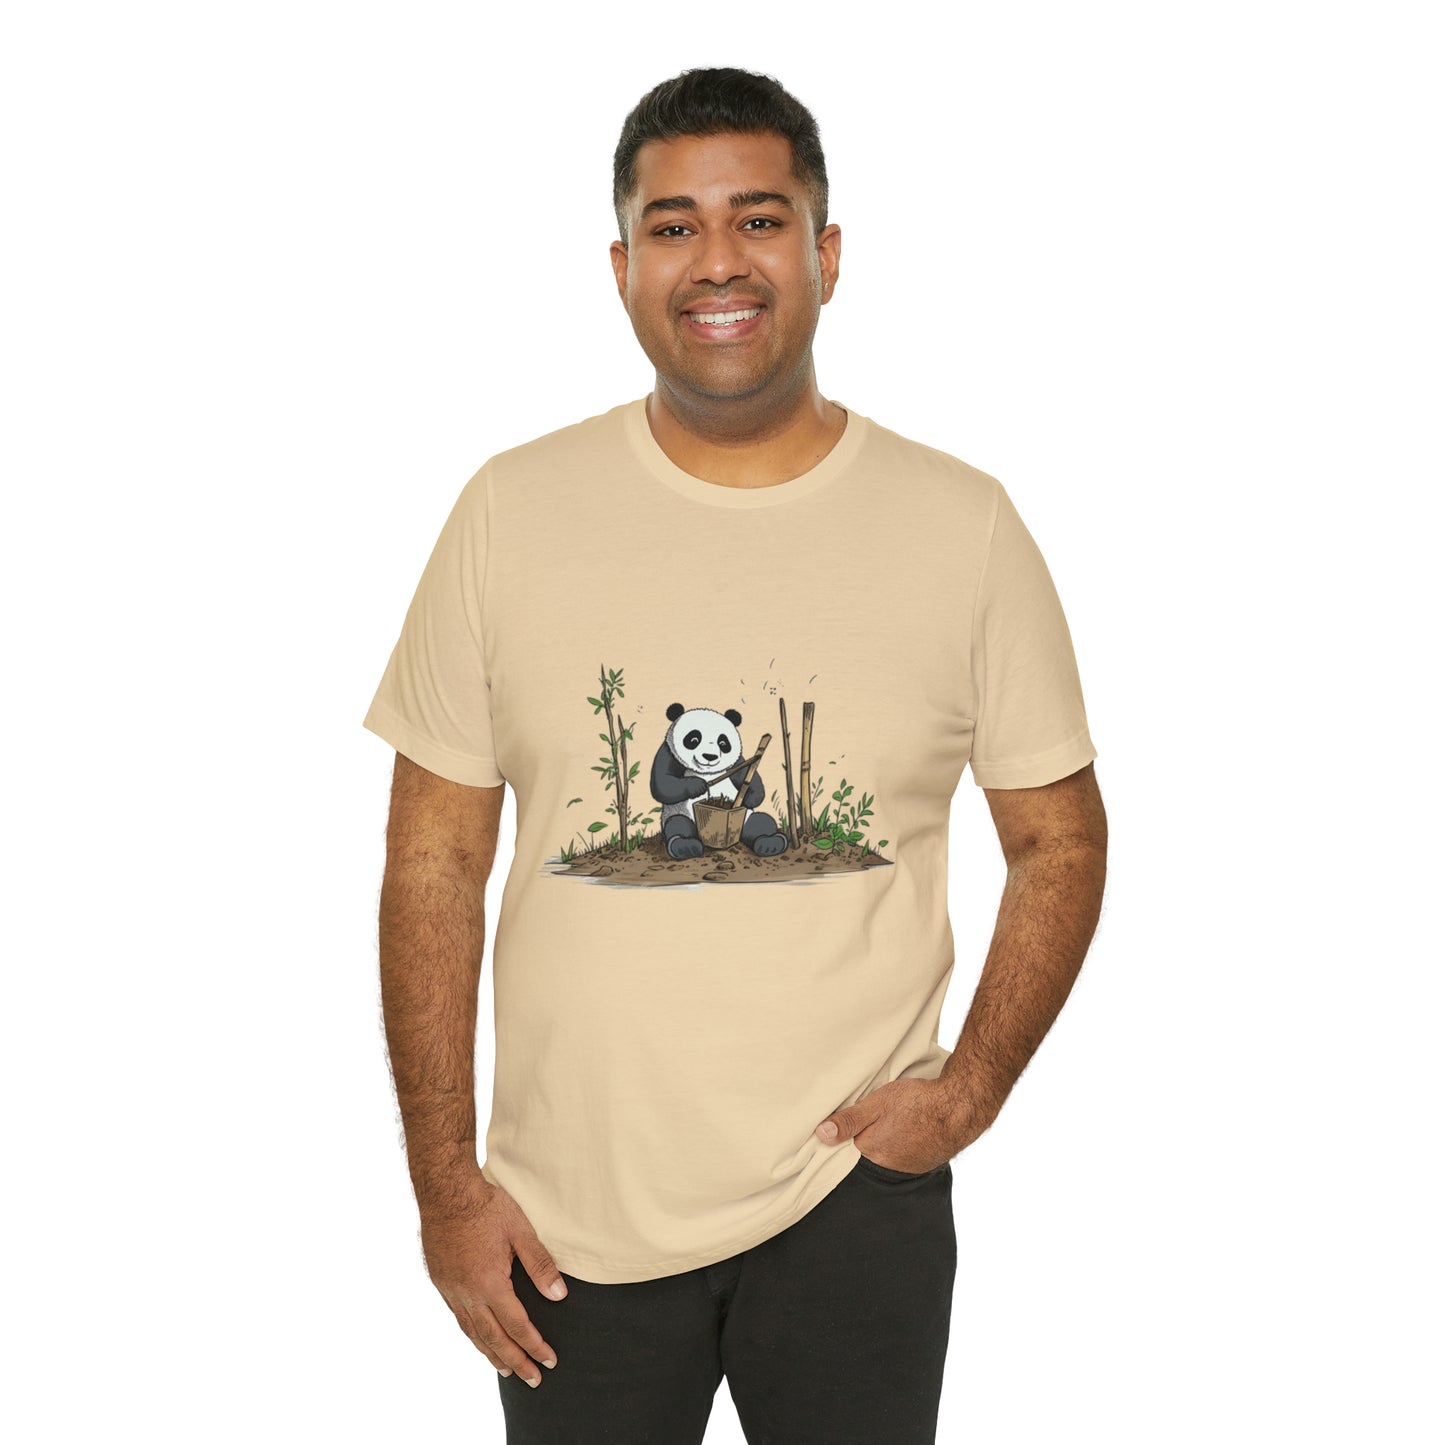 Eco-Panda Unisex Jersey Tee